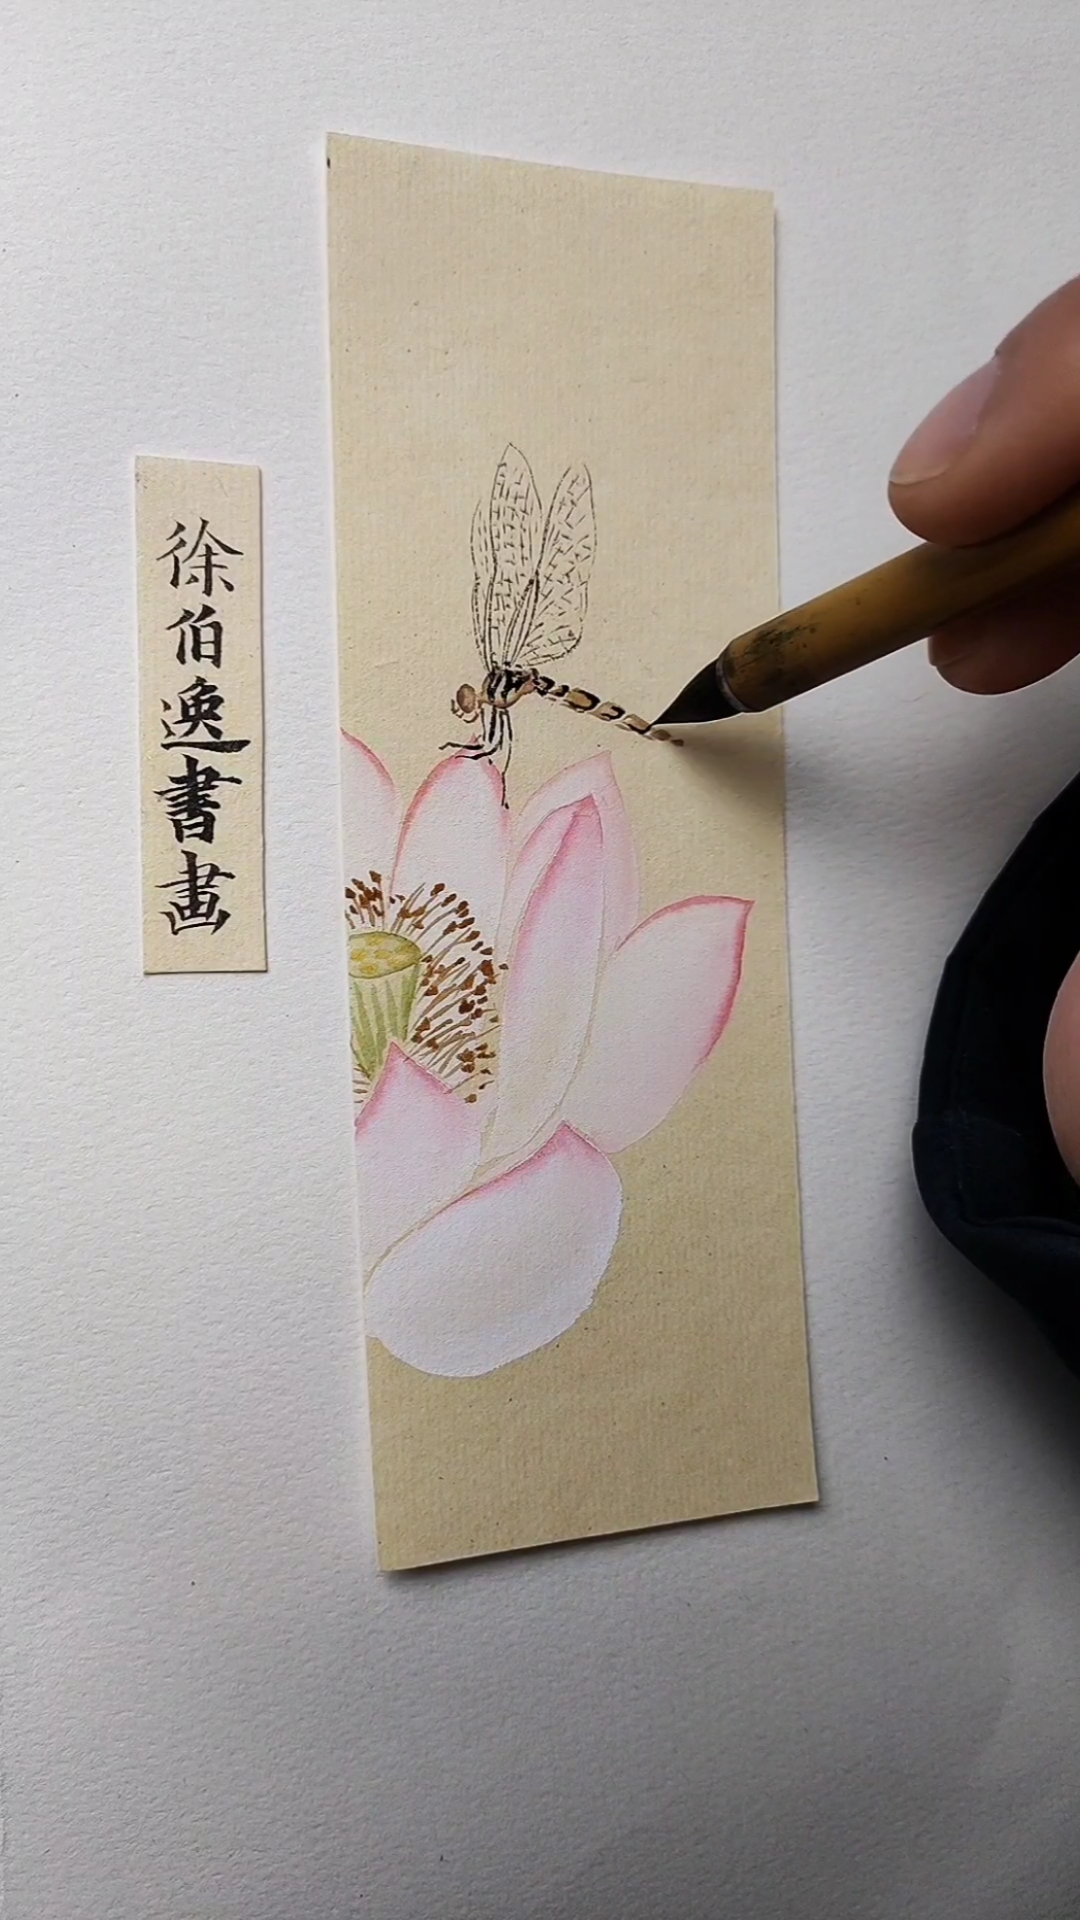 徐伯逸书画画一张荷花蜻蜓书签